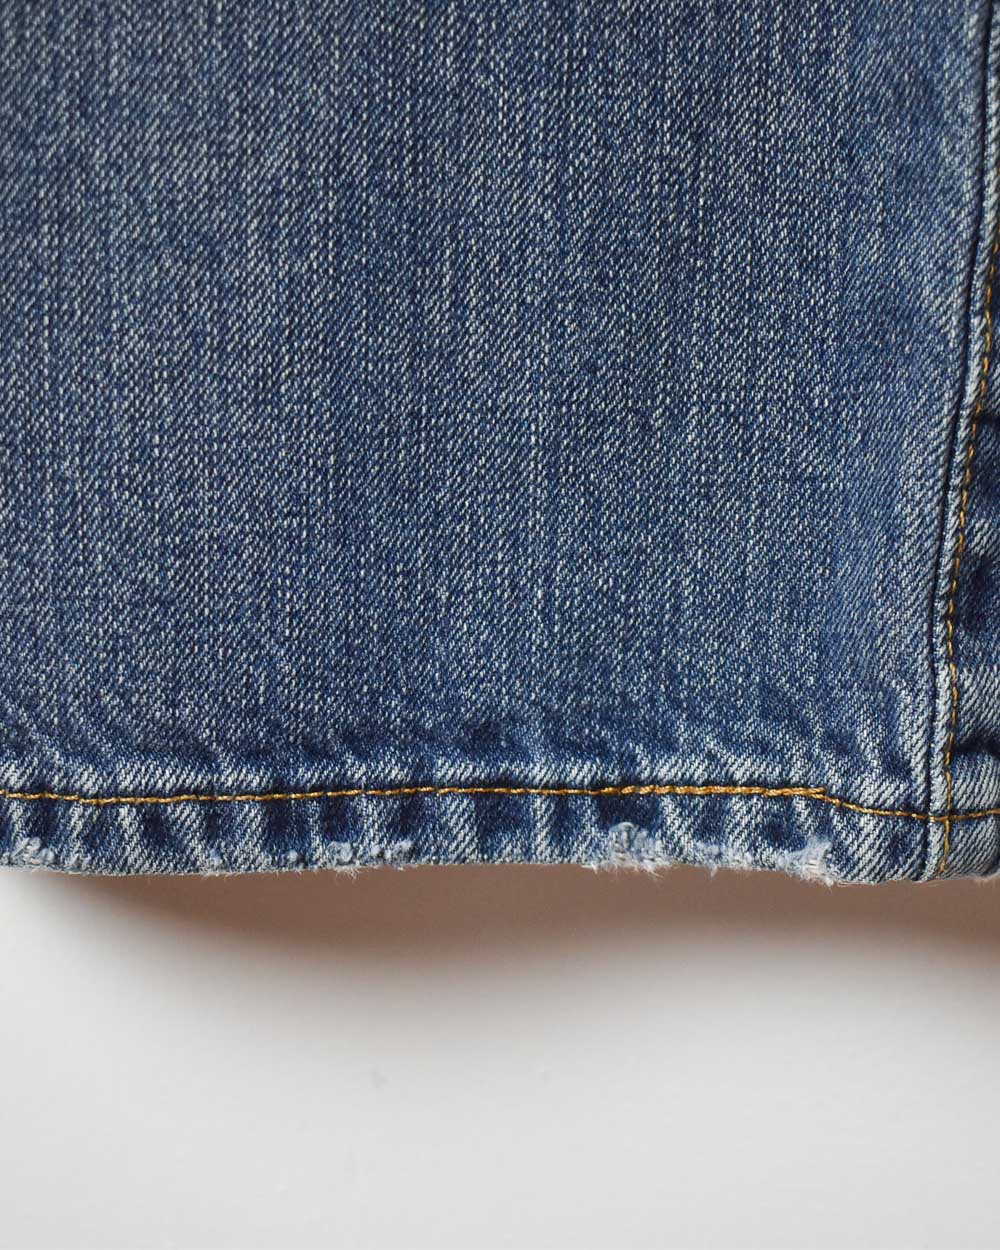 Blue Levi's 501 Jeans - W38 L34